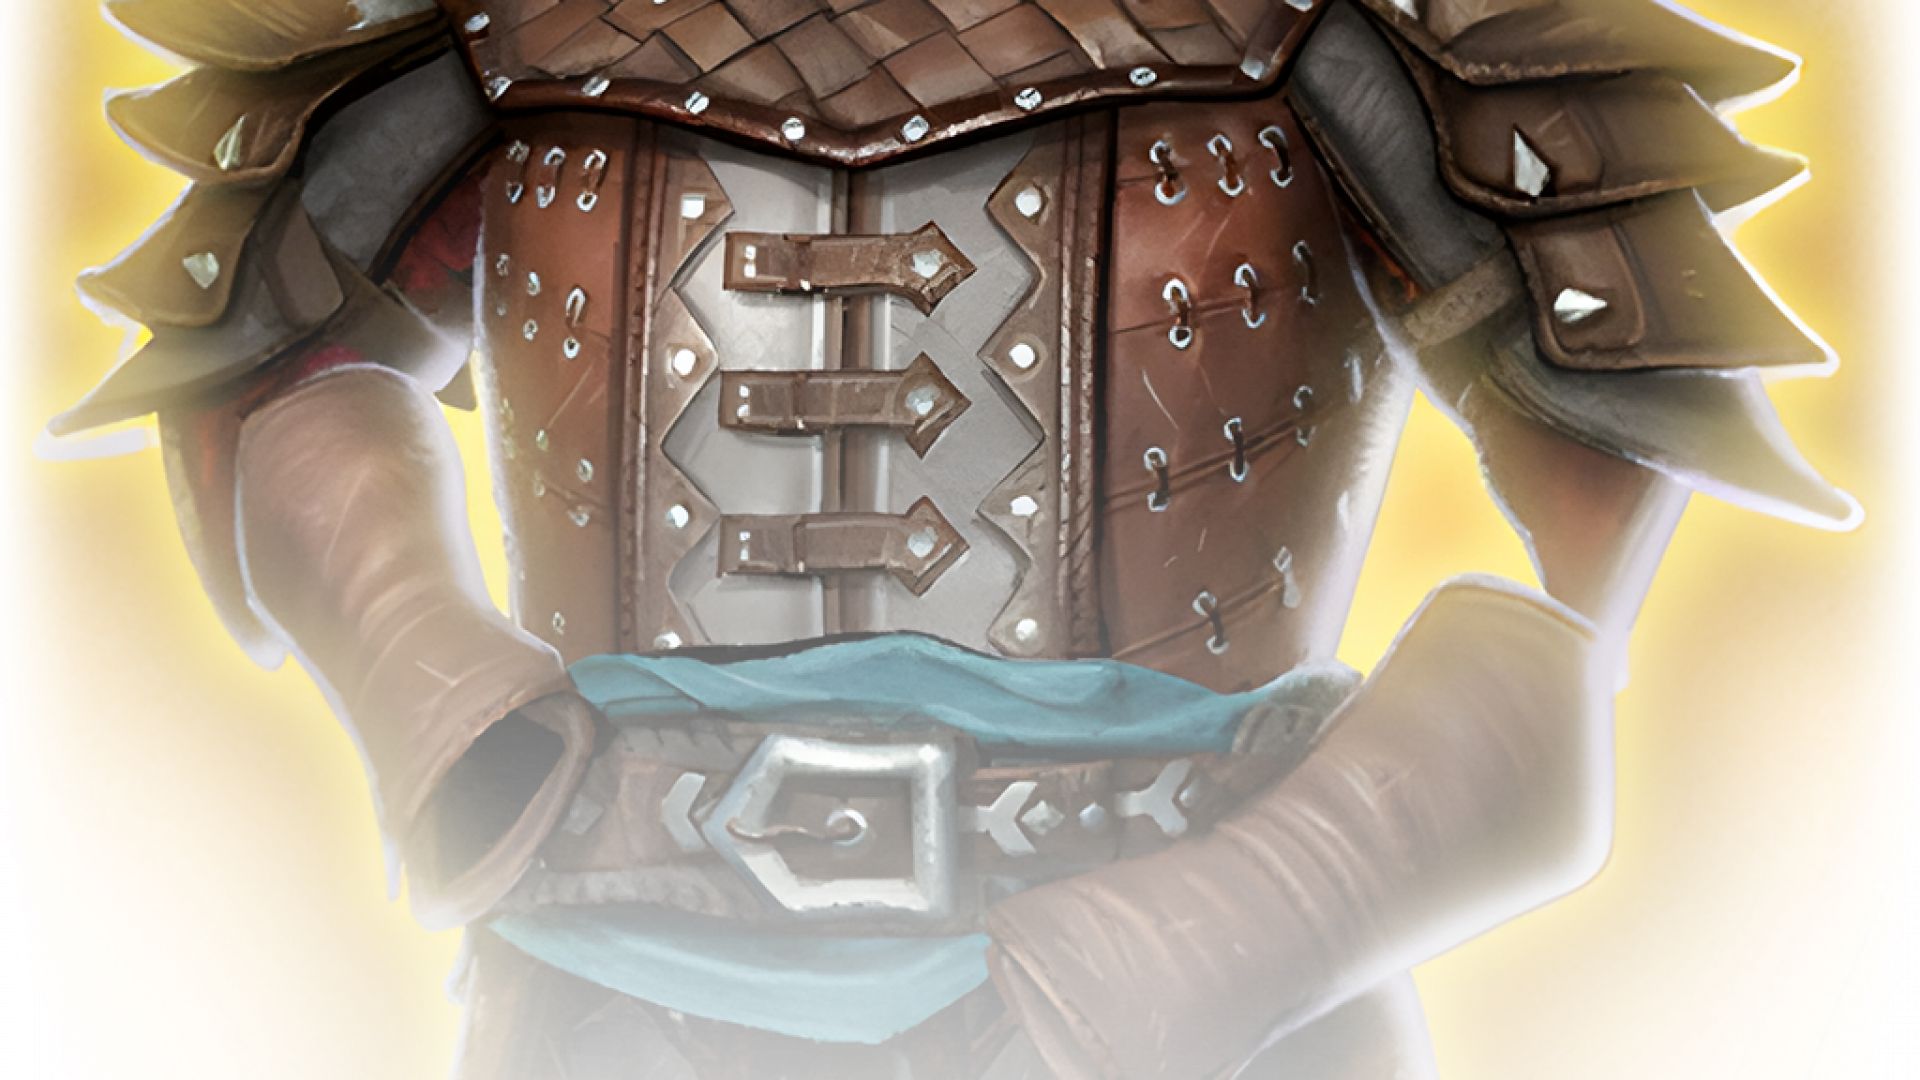 Studded Leather Armour +1 - Baldur's Gate 3 Database